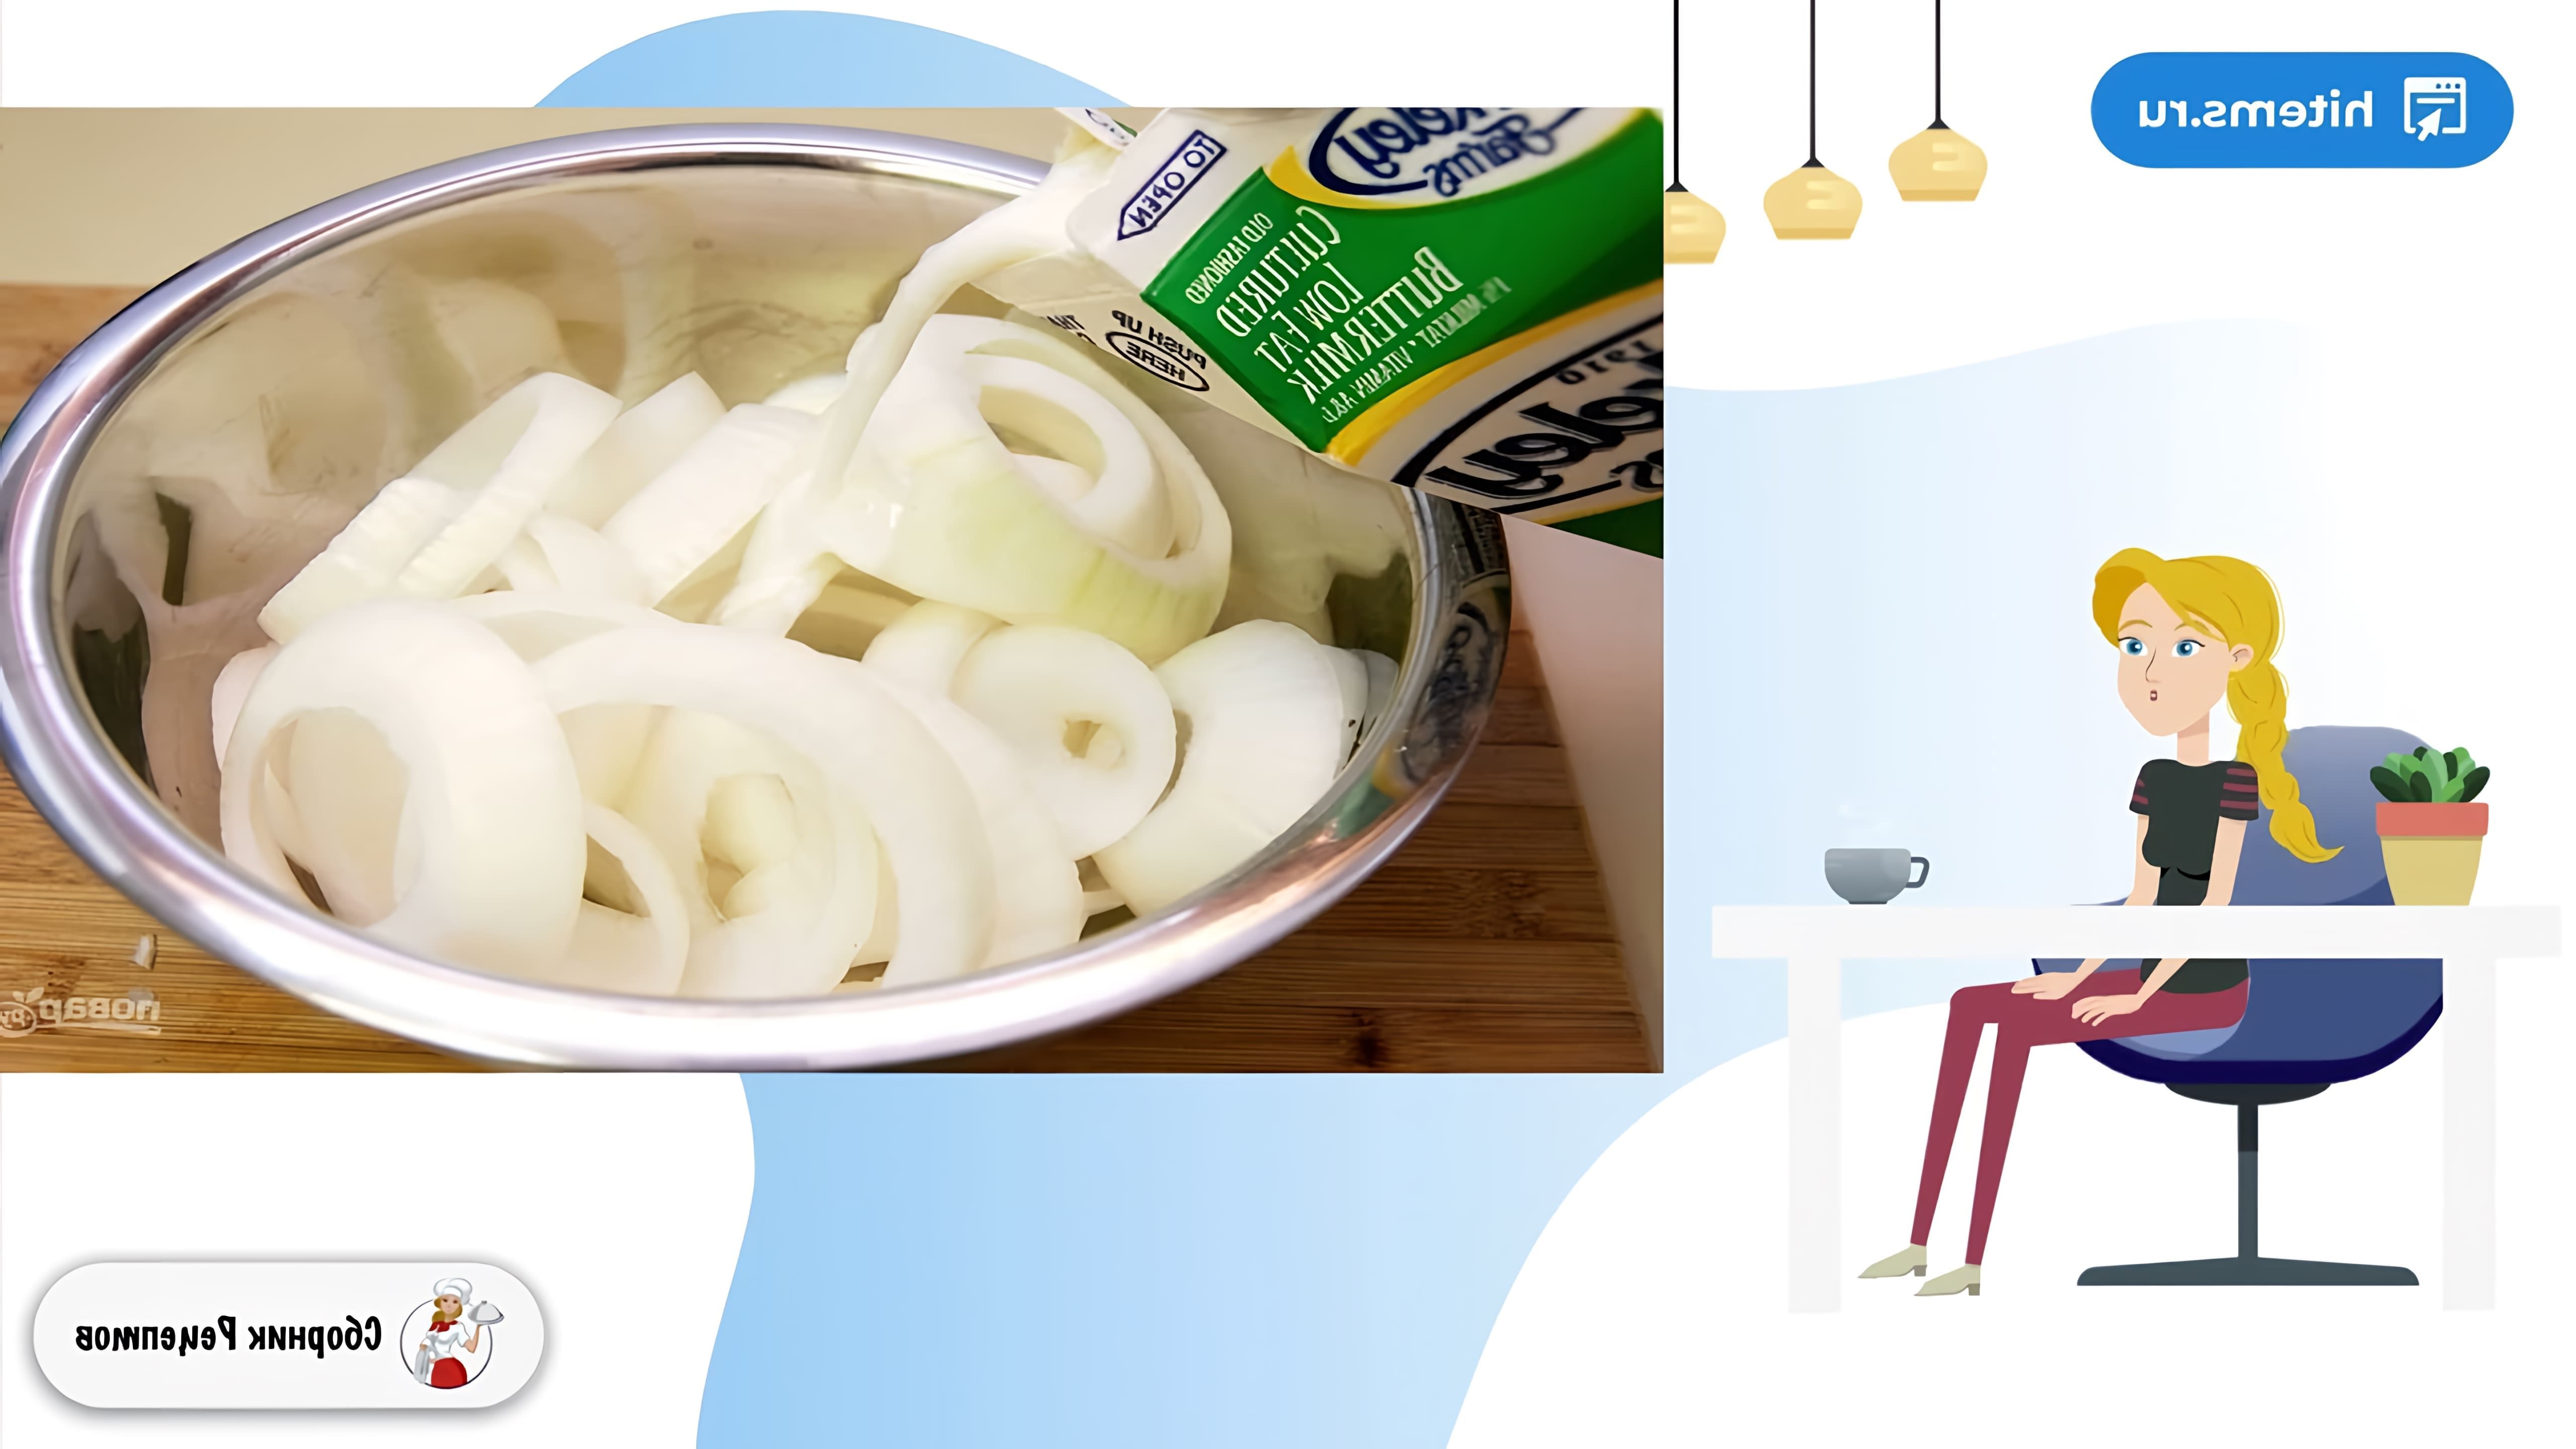 В этом видео показан пошаговый рецепт приготовления луковых колец в духовке